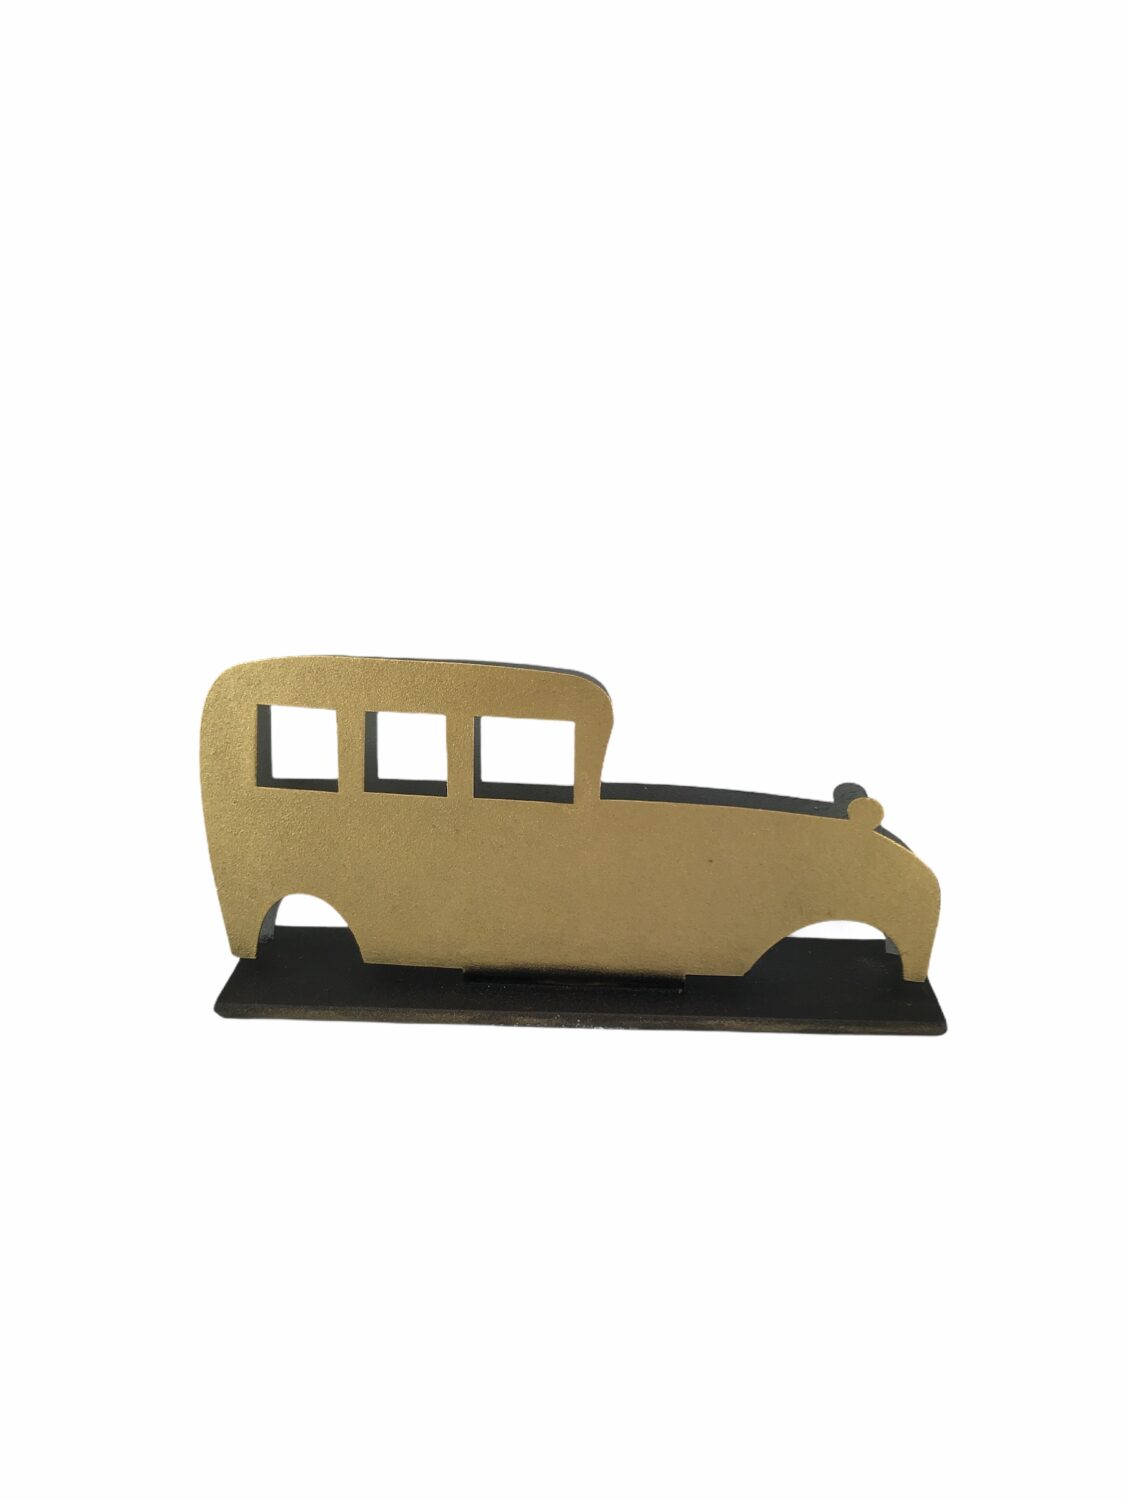 “Χρυσό vintage αυτοκίνητο” 13 εκ.